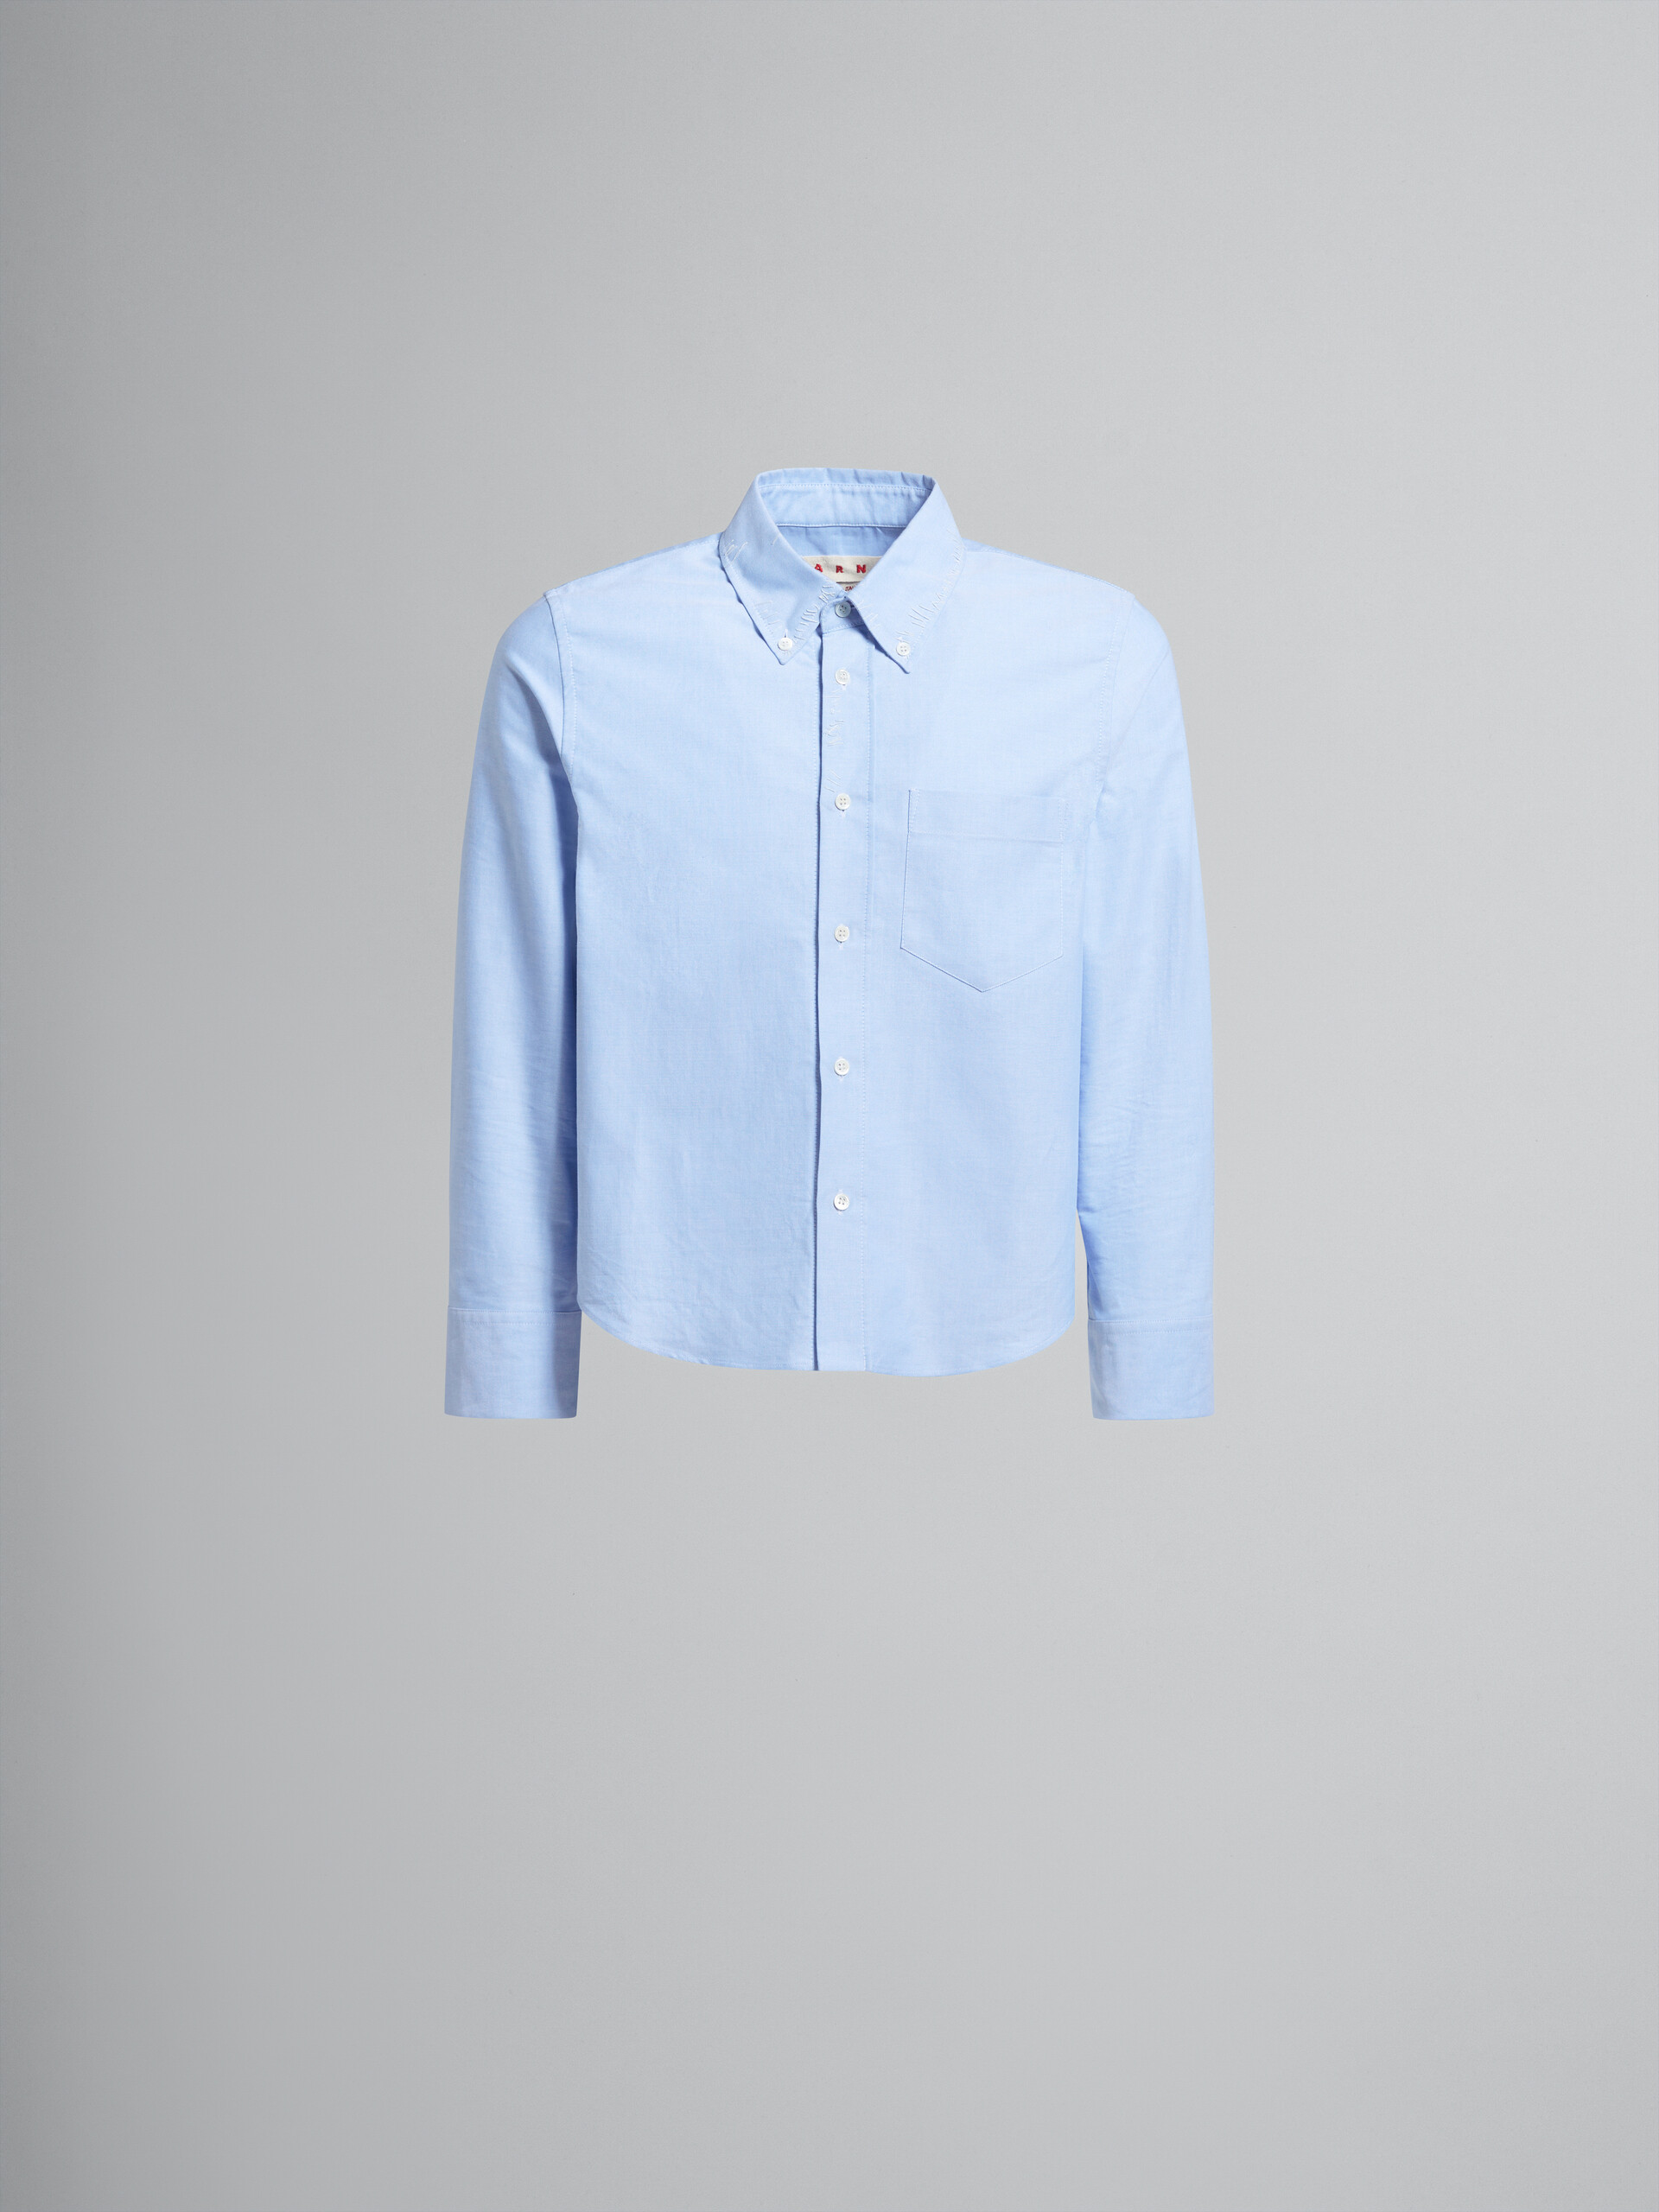 Camisa corta de oxford azul claro con efecto remiendo Marni - Camisas - Image 1